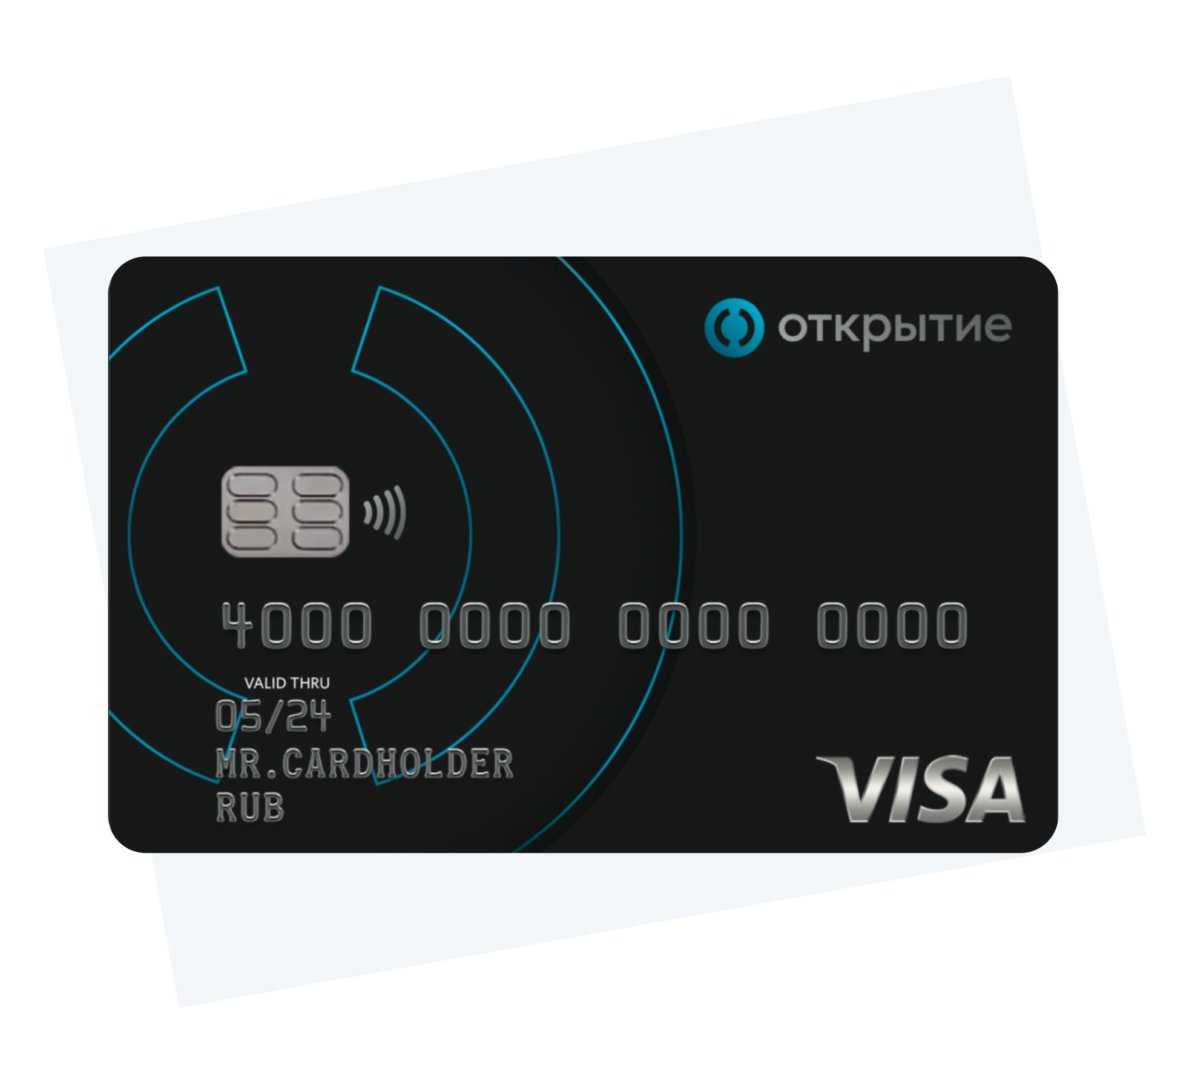 Банк «Открытие» запустил новую кредитную карту «Всё что надо»